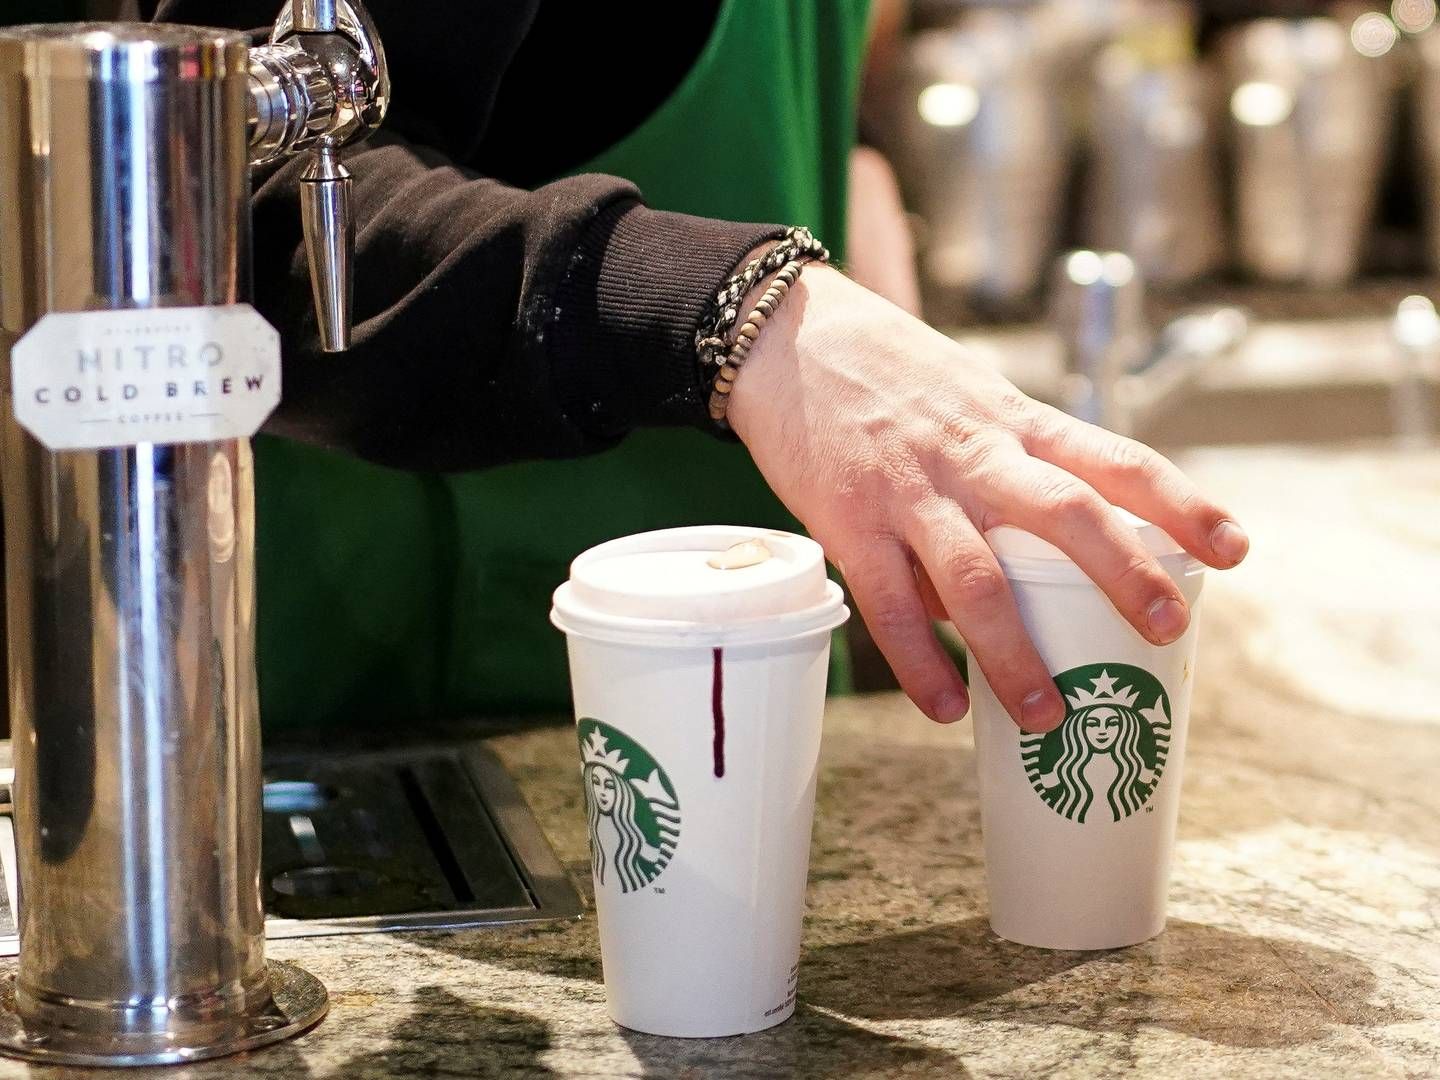 Andet kvartal var "udfordrende" for kaffekæden Starbucks, lyder det fra kædens økonomidirektør. | Foto: Henry Nicholls/Ritzau Scanpix.